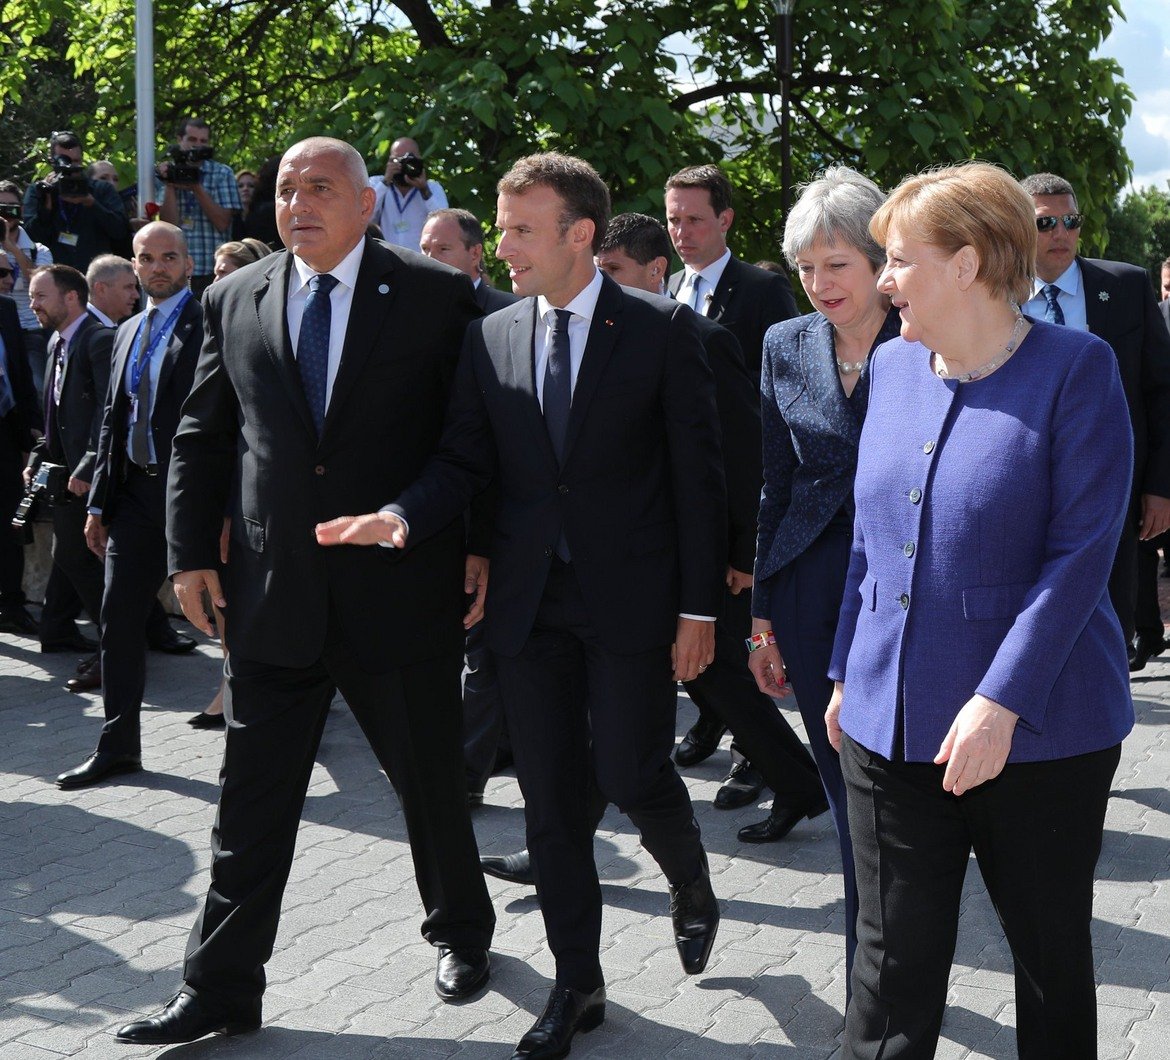 До преди няколко месеца ЕК посочваше 2025 г. като евентуален срок за присъединяването на Сърбия и Черна гора към съюза. В София обаче германският канцлер Ангела Меркел и френският президент Еманюел Макрон дадоха да се разбере, че включването на балкански страни в ЕС може да се случи само на база съществен напредък по проблемните теми.

